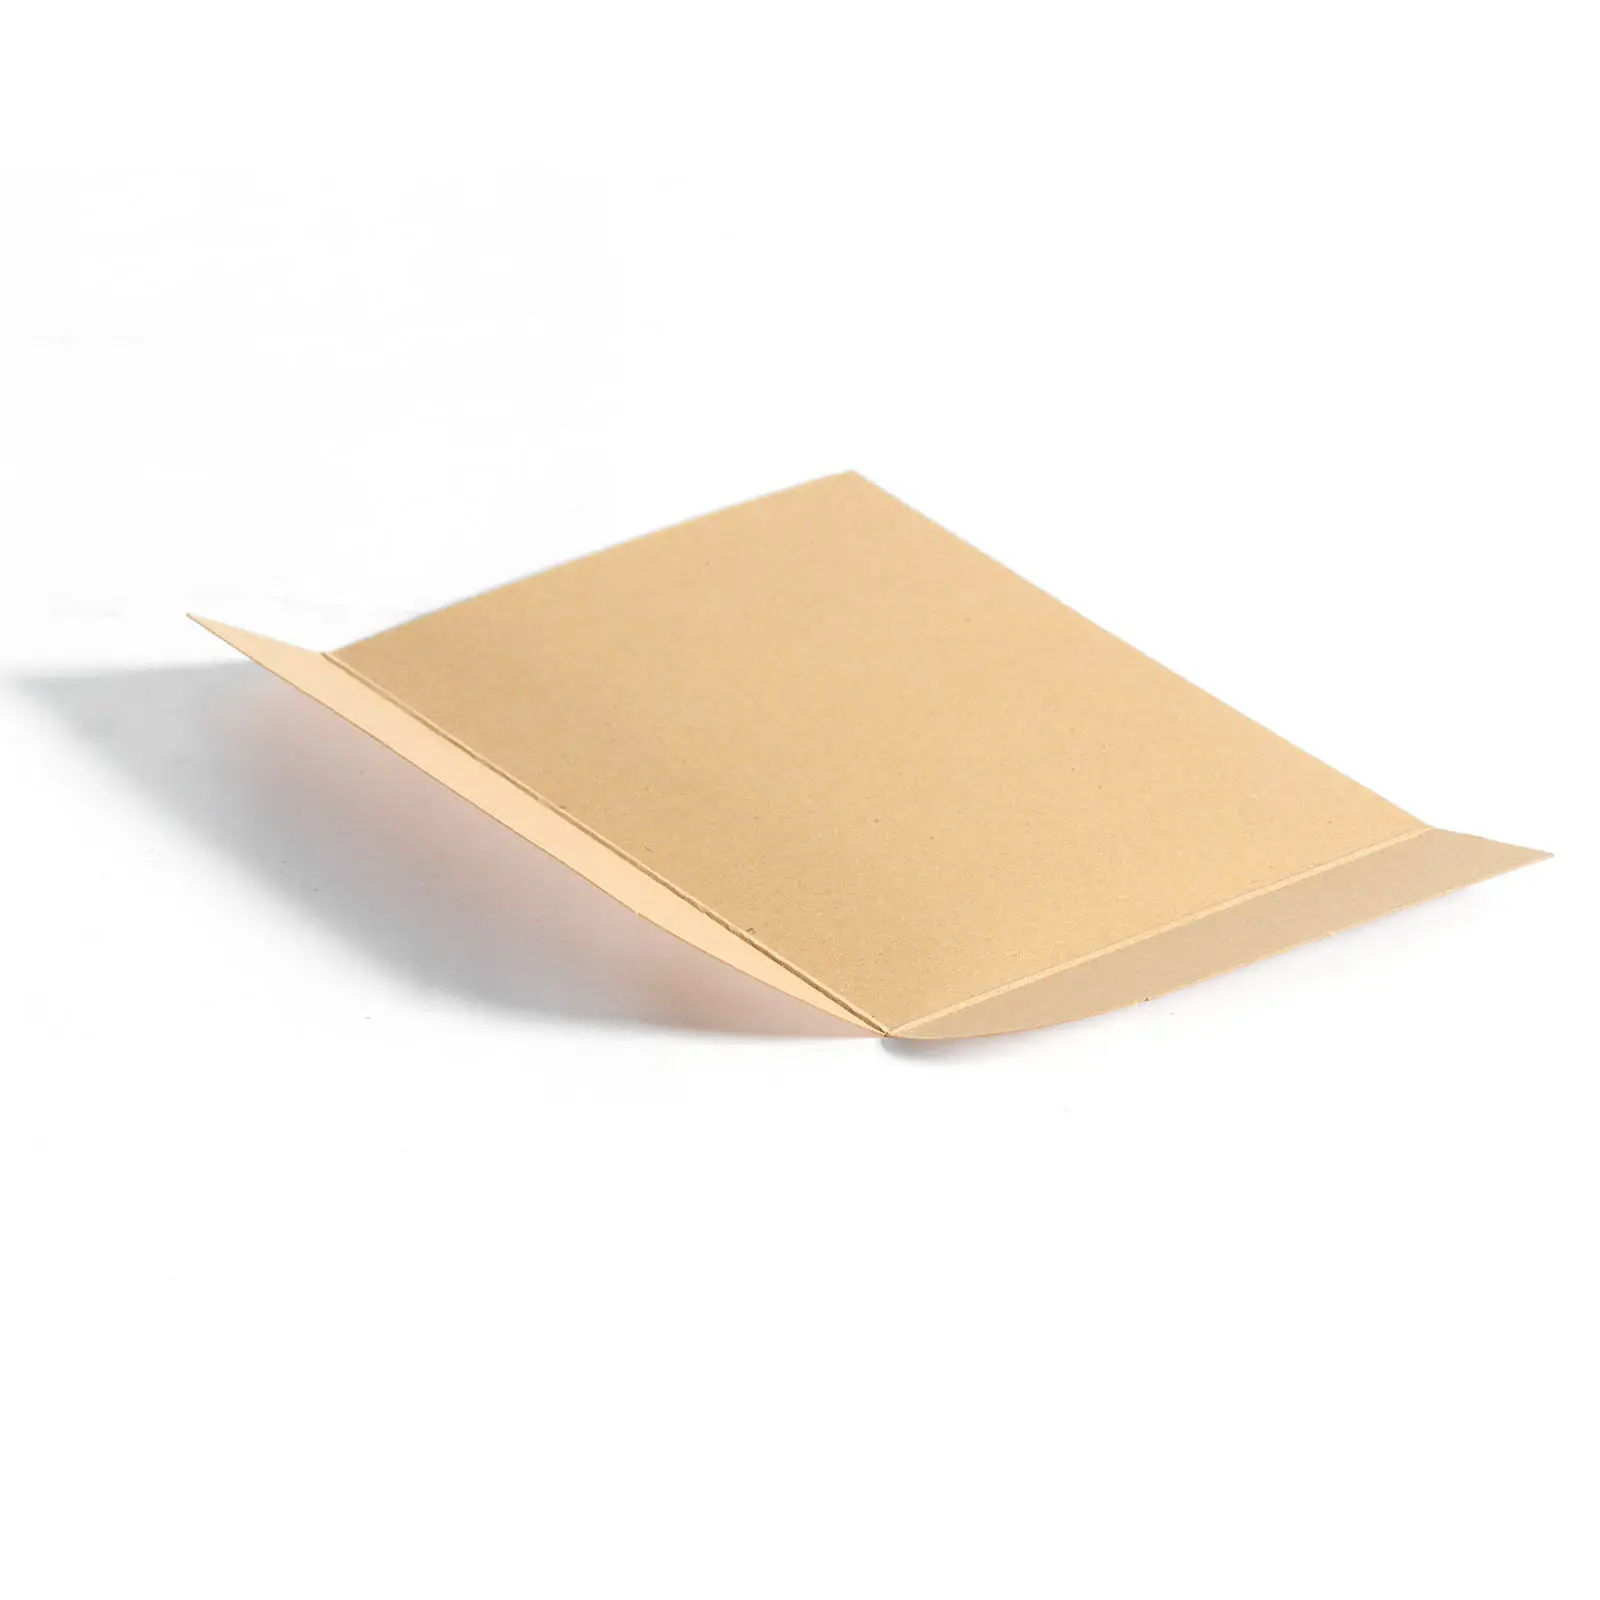 2วิธีผลักดันดึงการขนส่งสินค้างานฝีมือกระดาษแข็งกระดาษลื่นแผ่นพาเลท